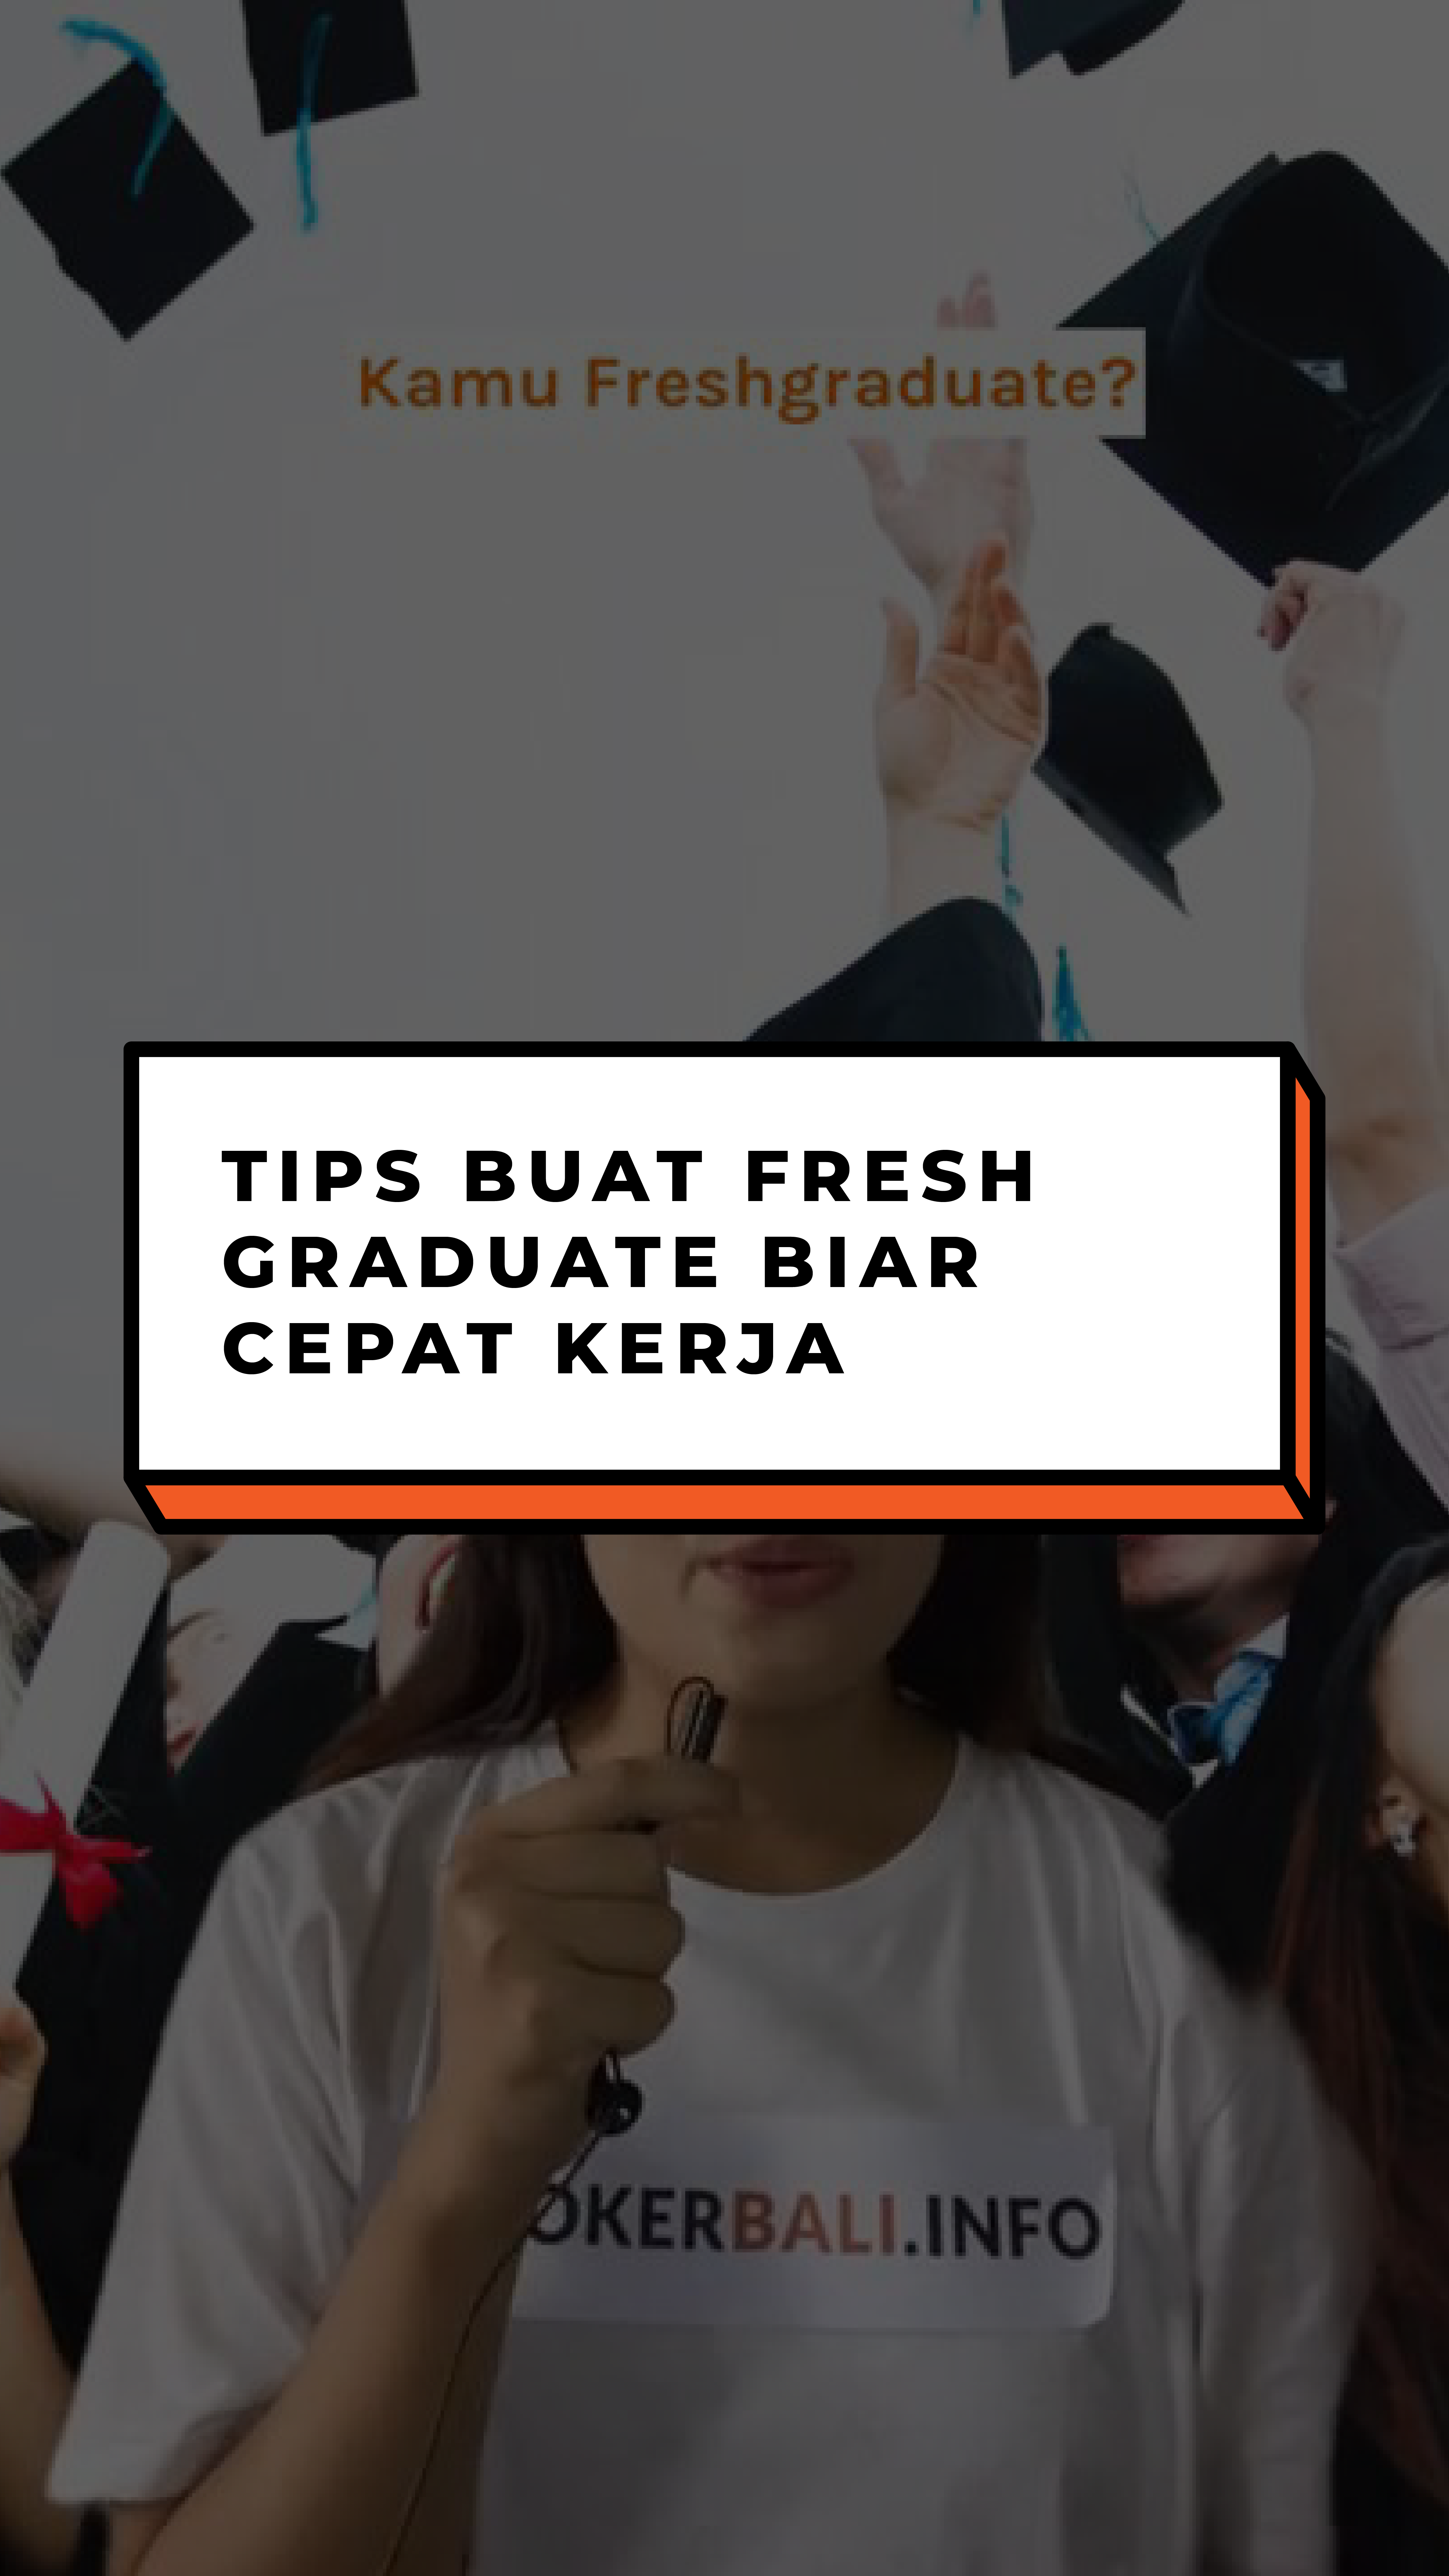 Tips Buat Fresh Graduate Biar Cepat Kerja